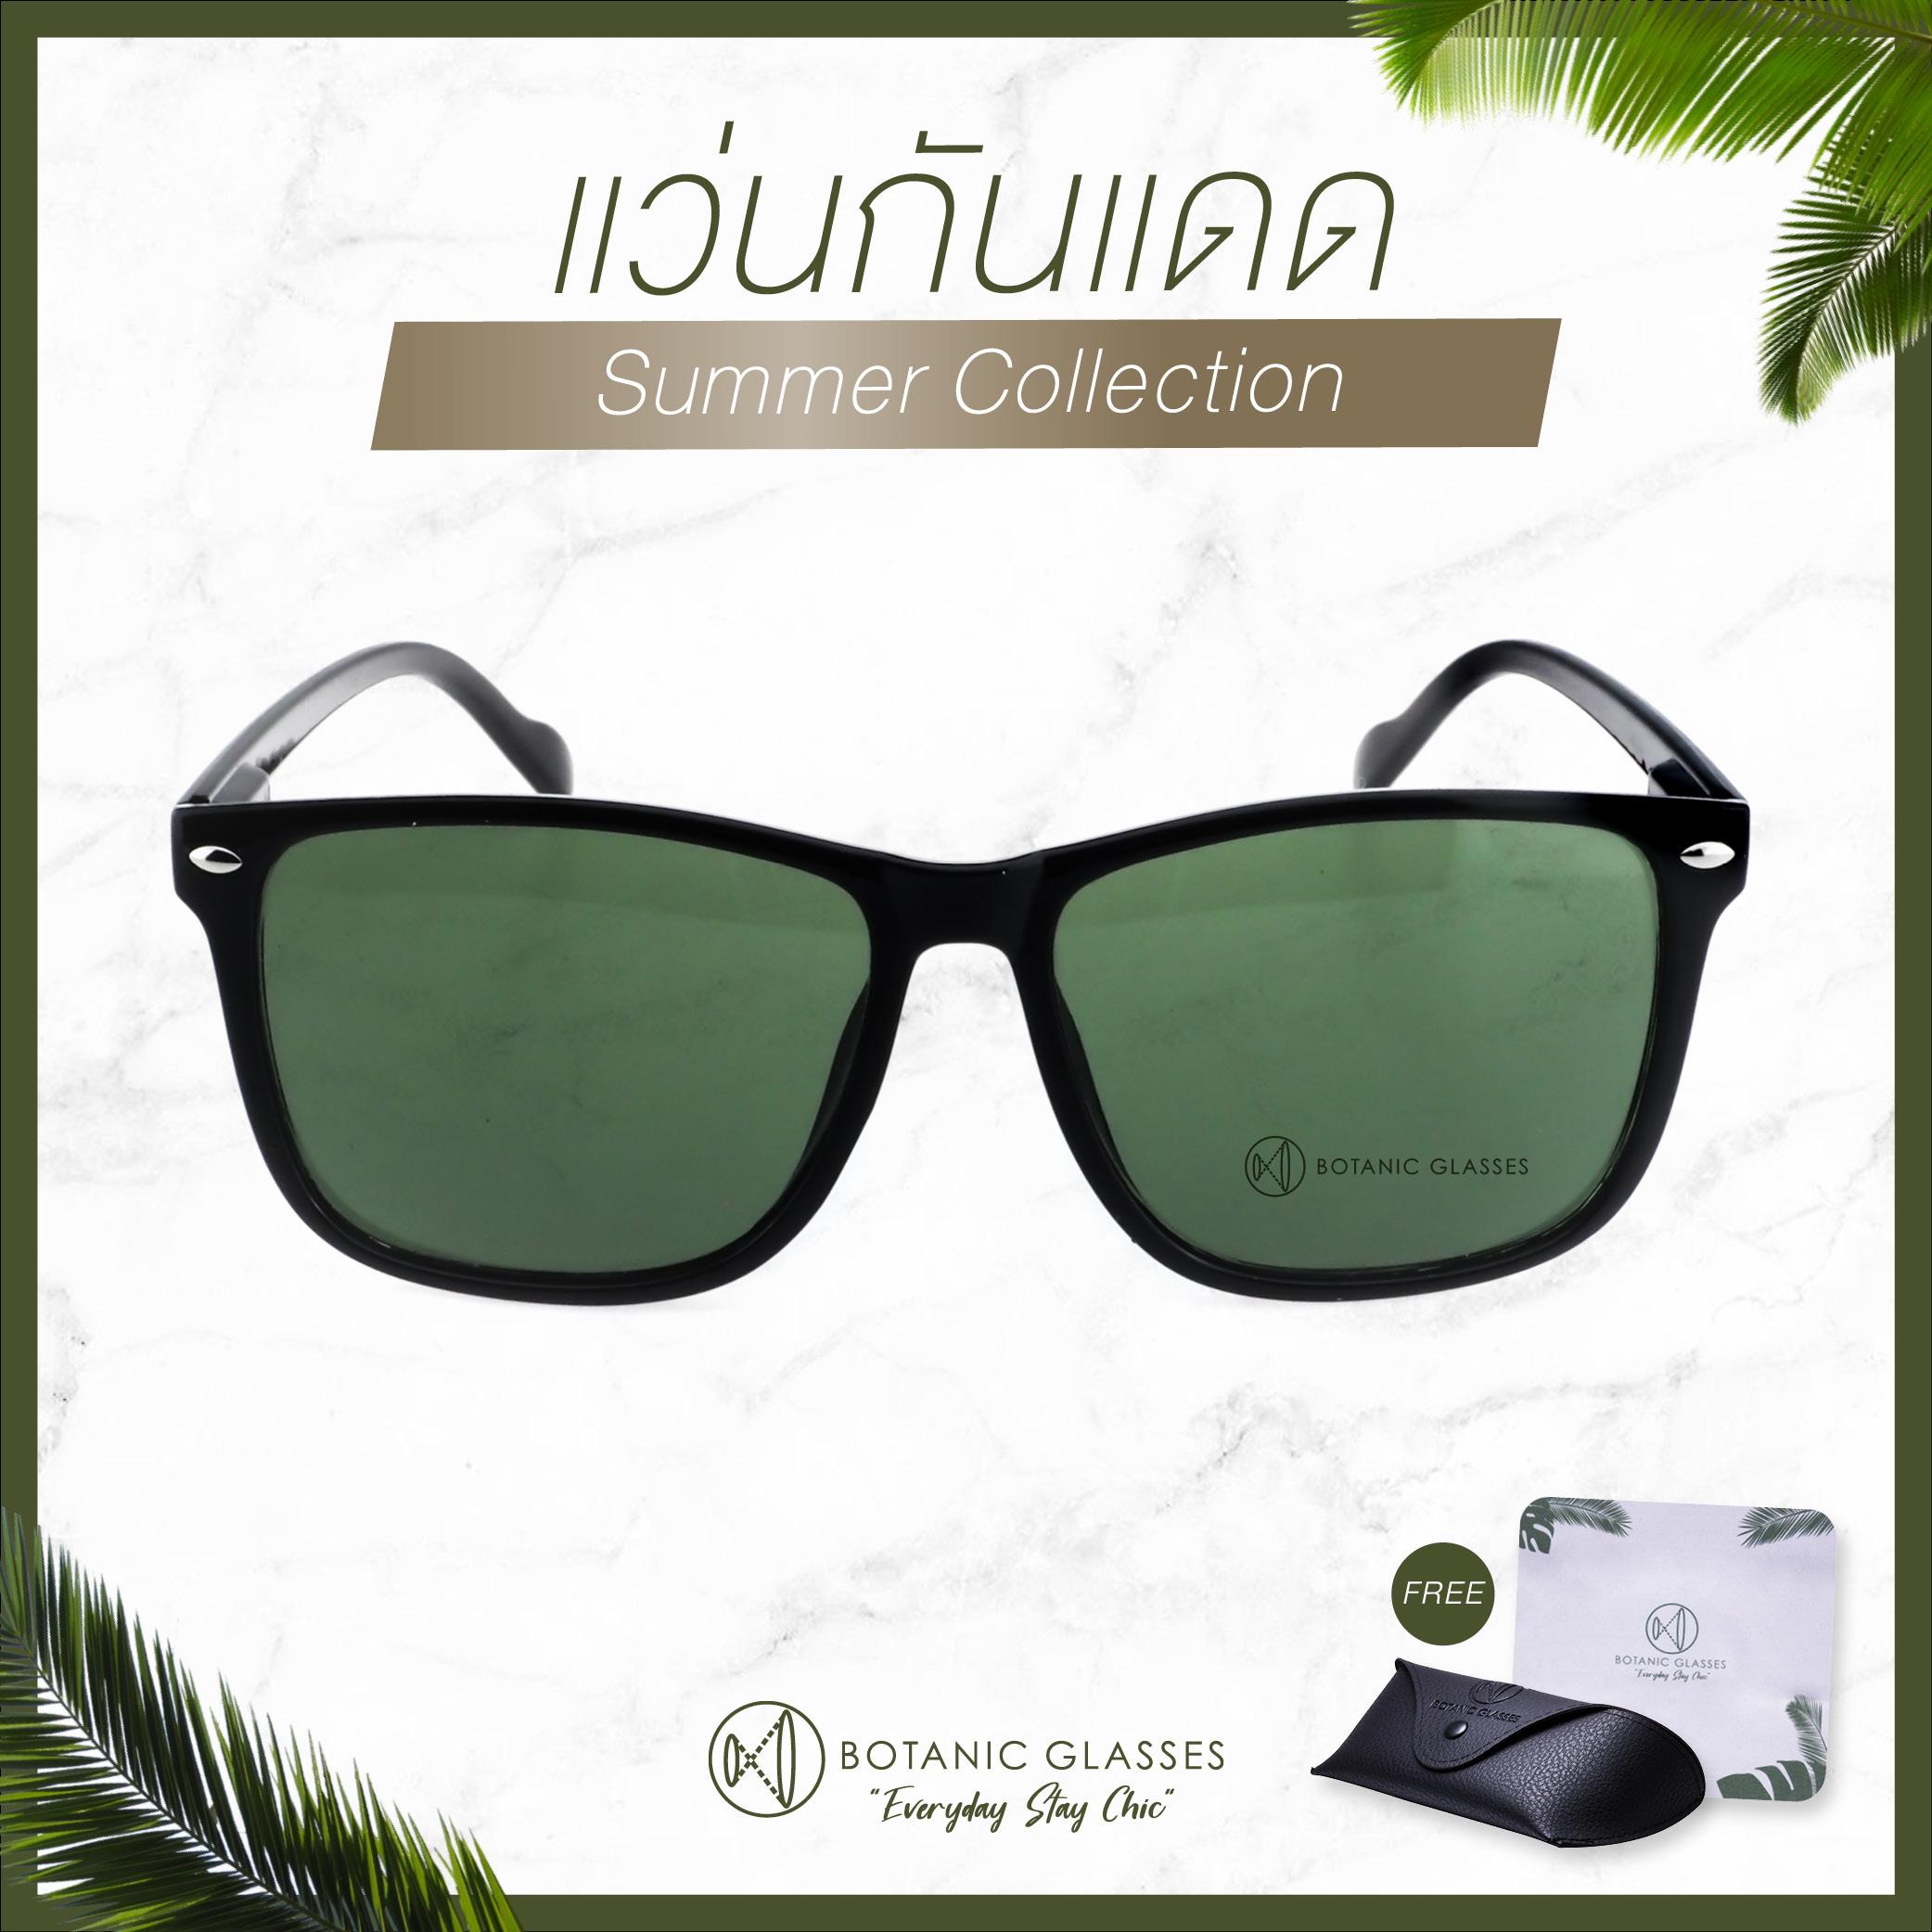 แว่นกันแดด แว่นกรองแสง มาใหม่ 2020 แว่นตากันแดด New Arrival Collection แว่นตา แว่น Sunglasses Summer Collection 21